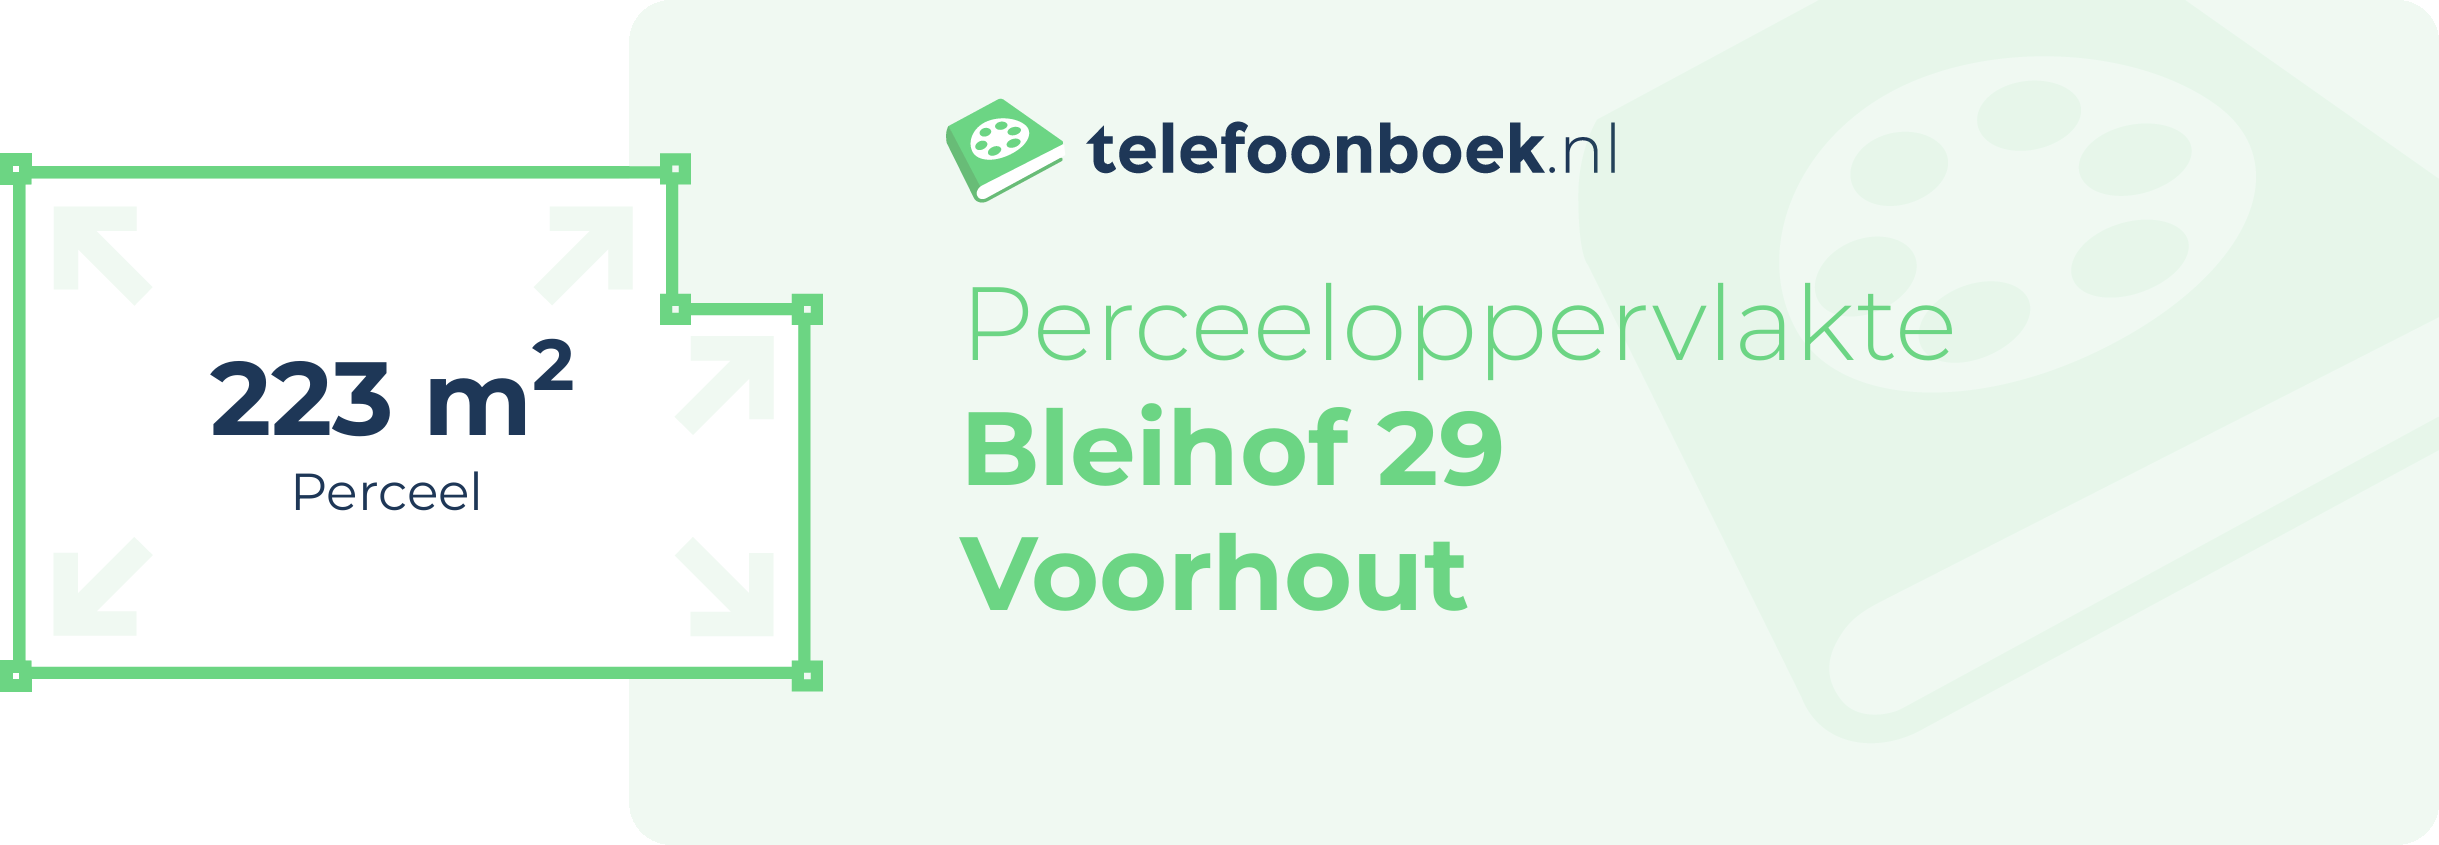 Perceeloppervlakte Bleihof 29 Voorhout